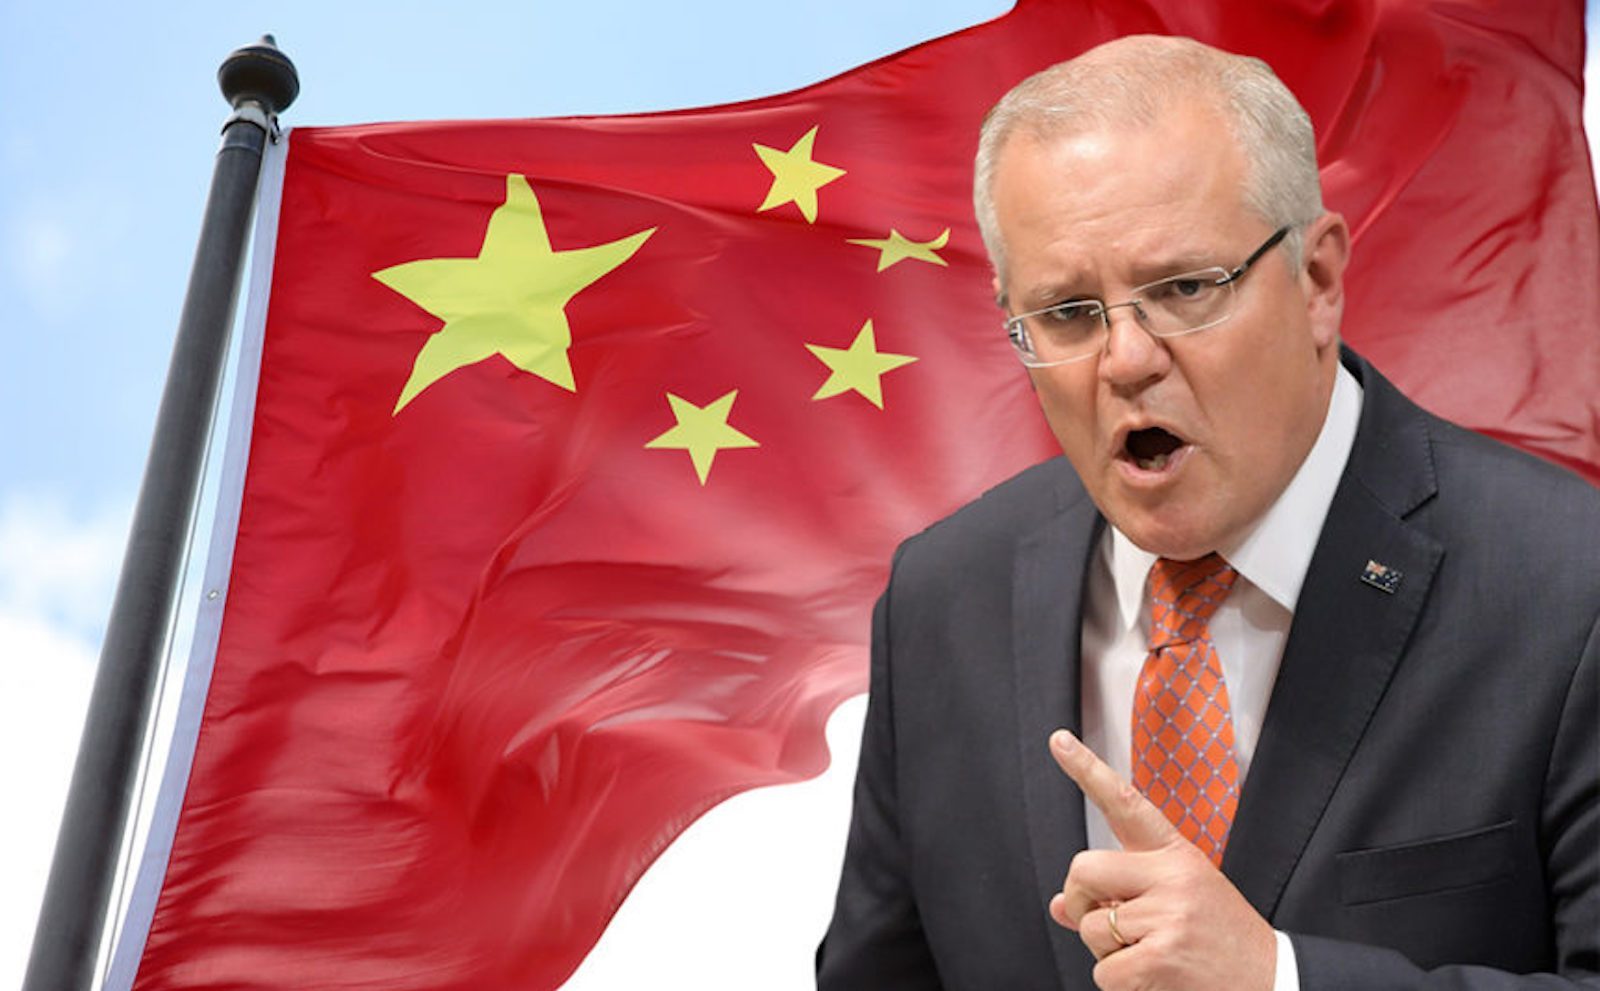 Úc có động thái chọc giận Trung Quốc giữa căng thẳng. Ảnh: AAP